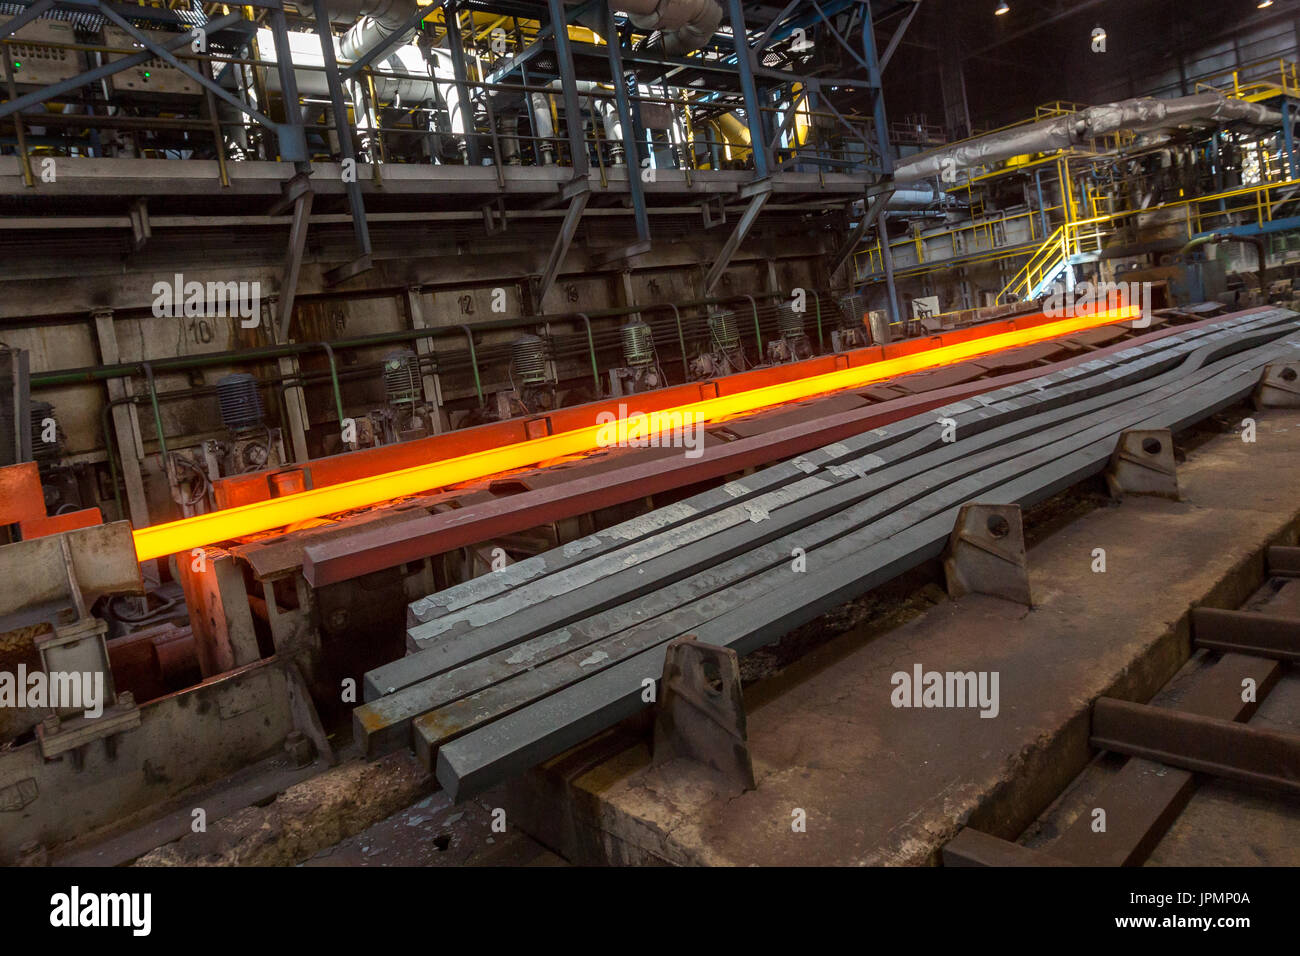 steel-mill-arcelormittal-ostrava-rolling-mill-JPMP0A.jpg